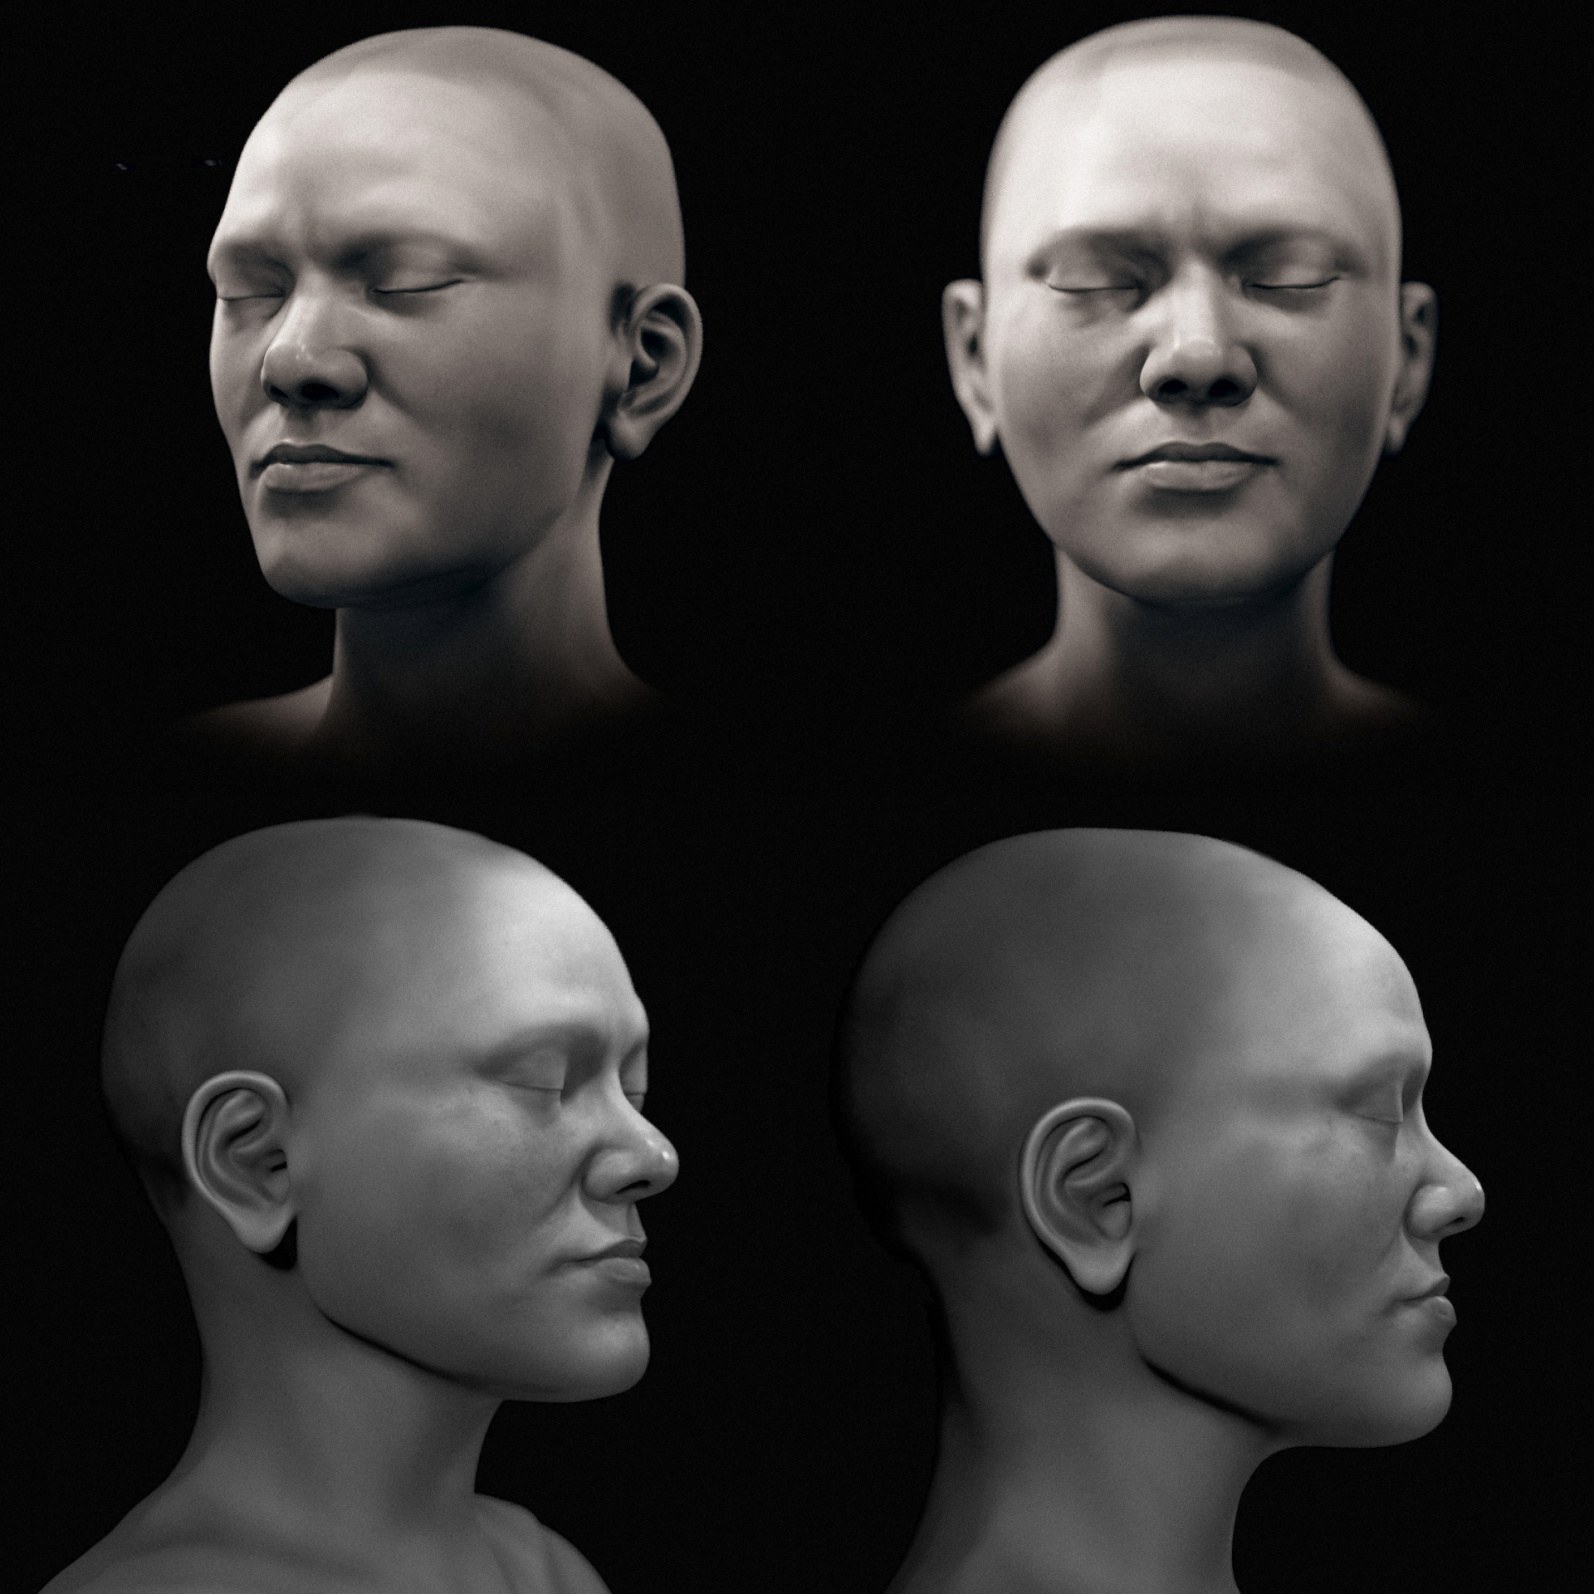 Une version en noir et blanc de l'approximation faciale.